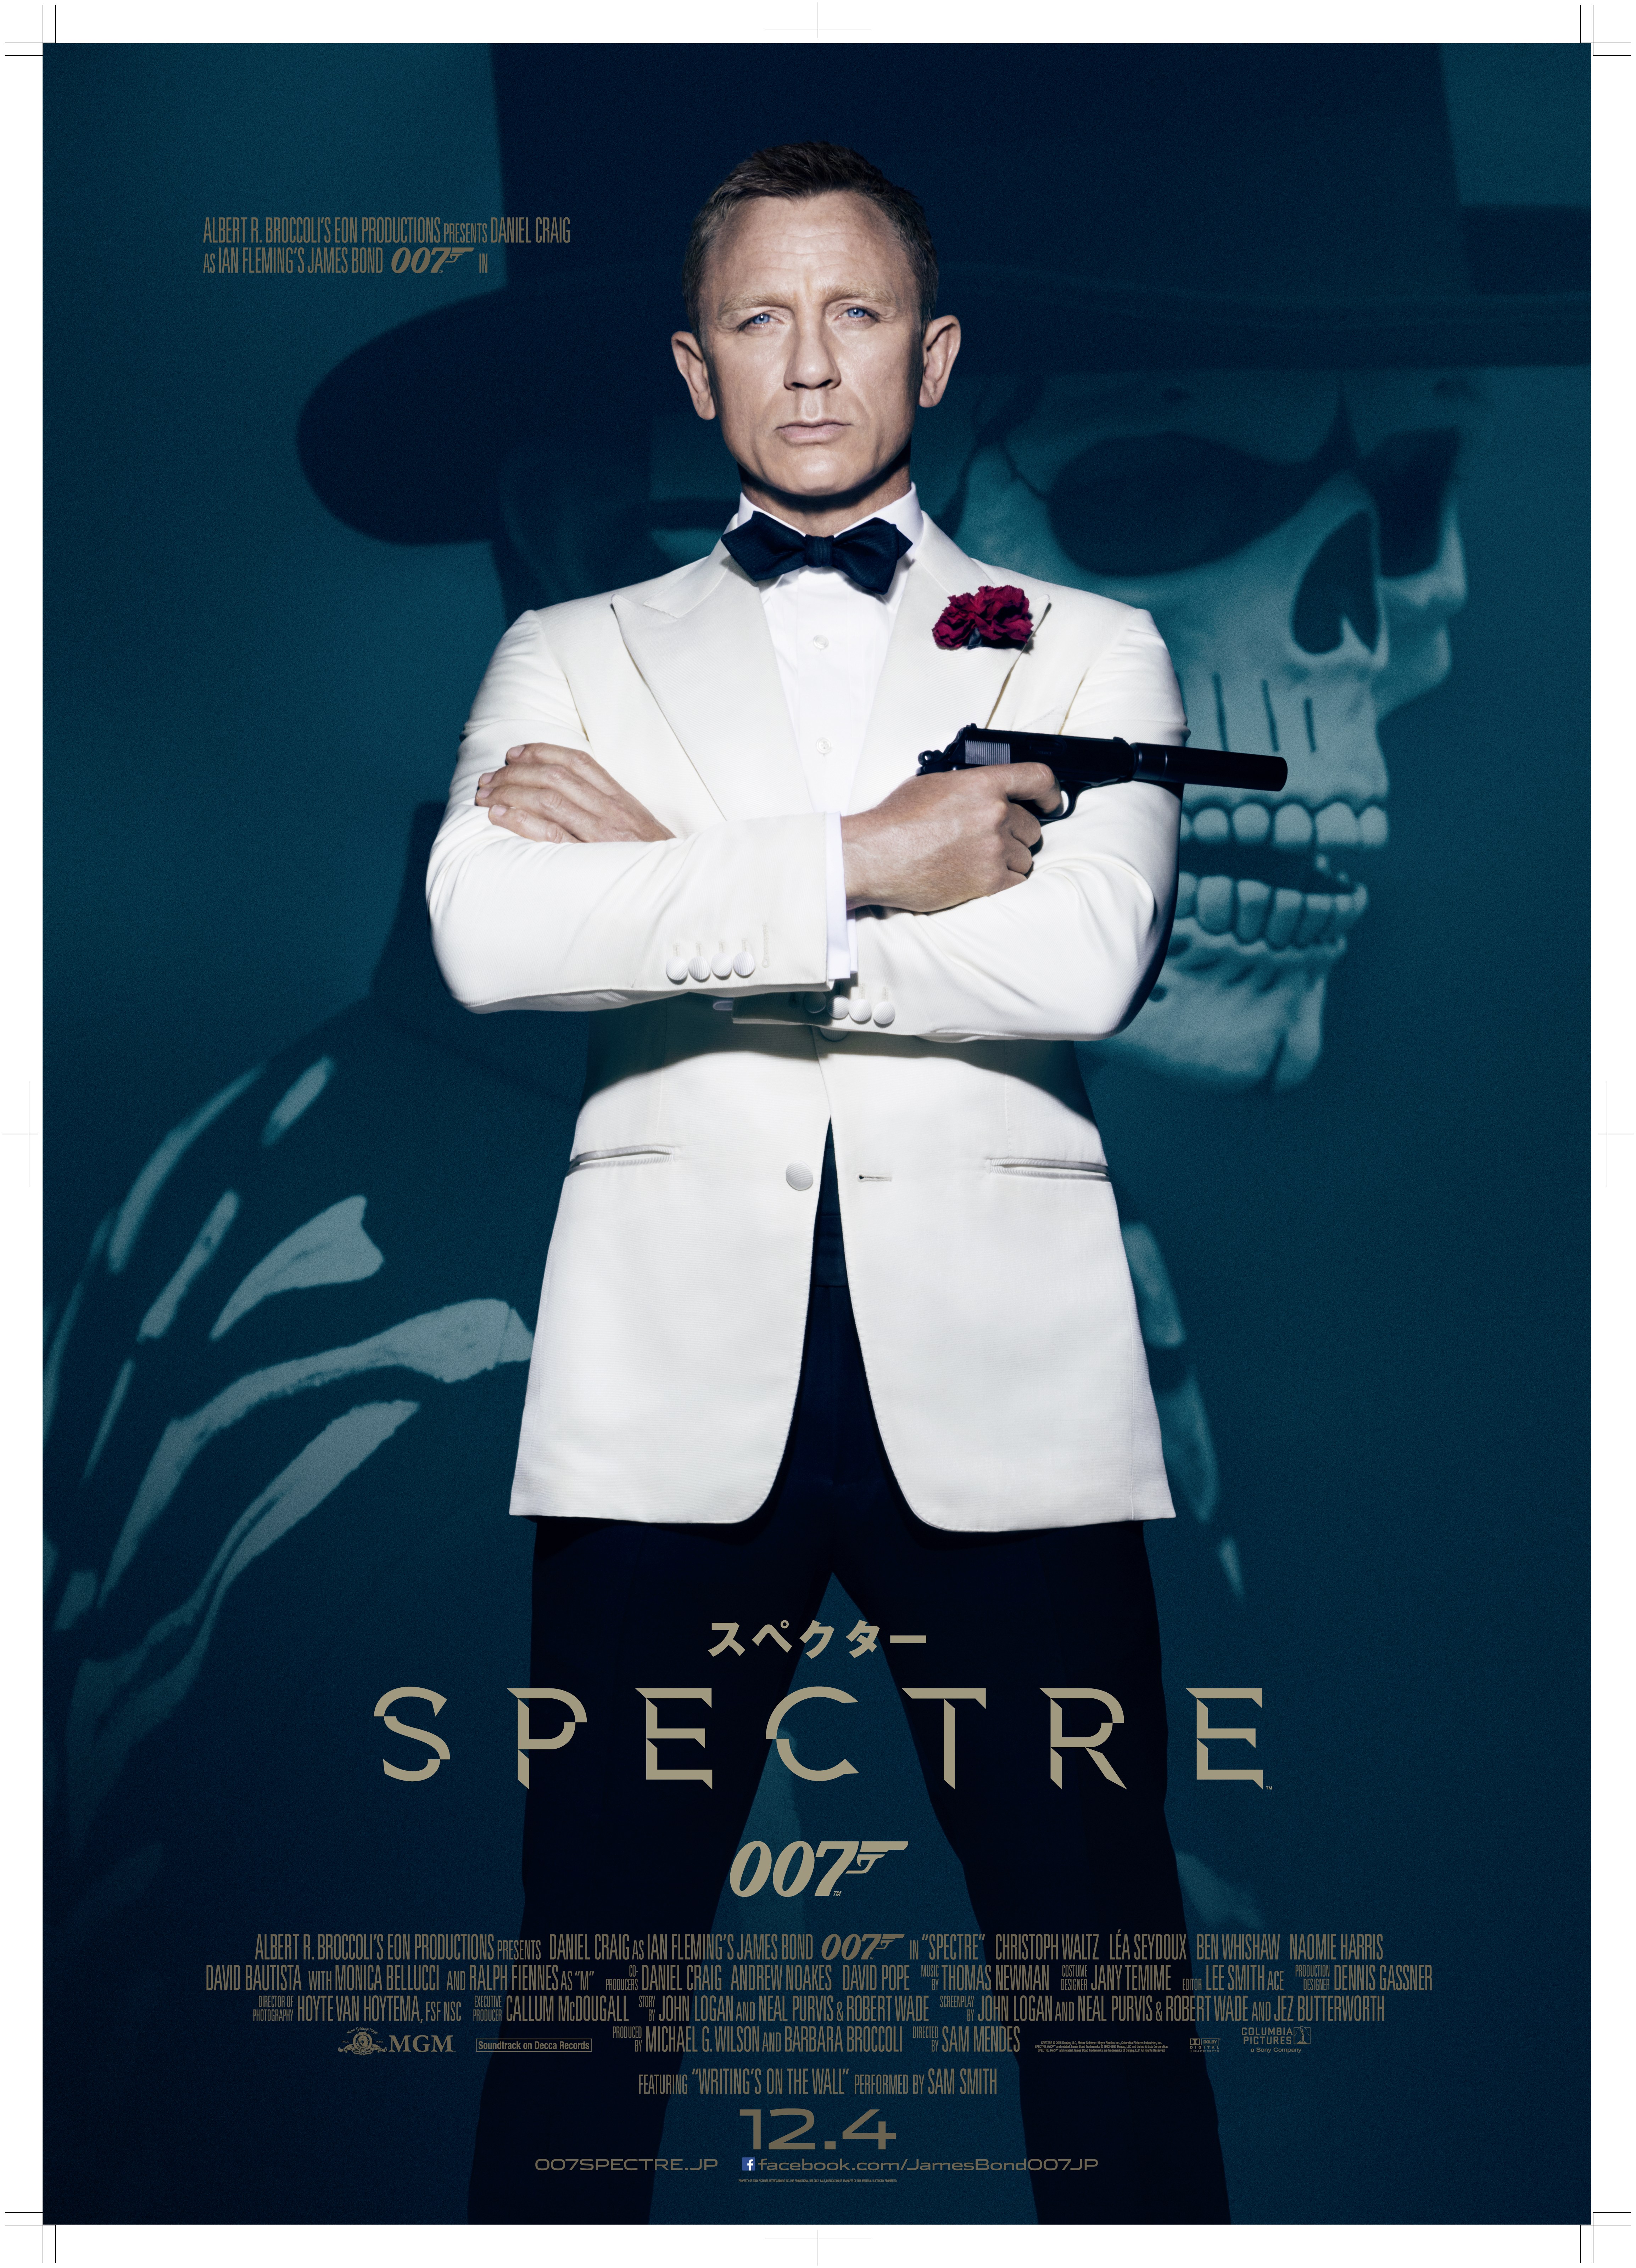 銀座 ソニービルで007シリーズ最新作を体感しよう 映画 007 スペクター 公開記念イベント ソニー企業株式会社のプレスリリース